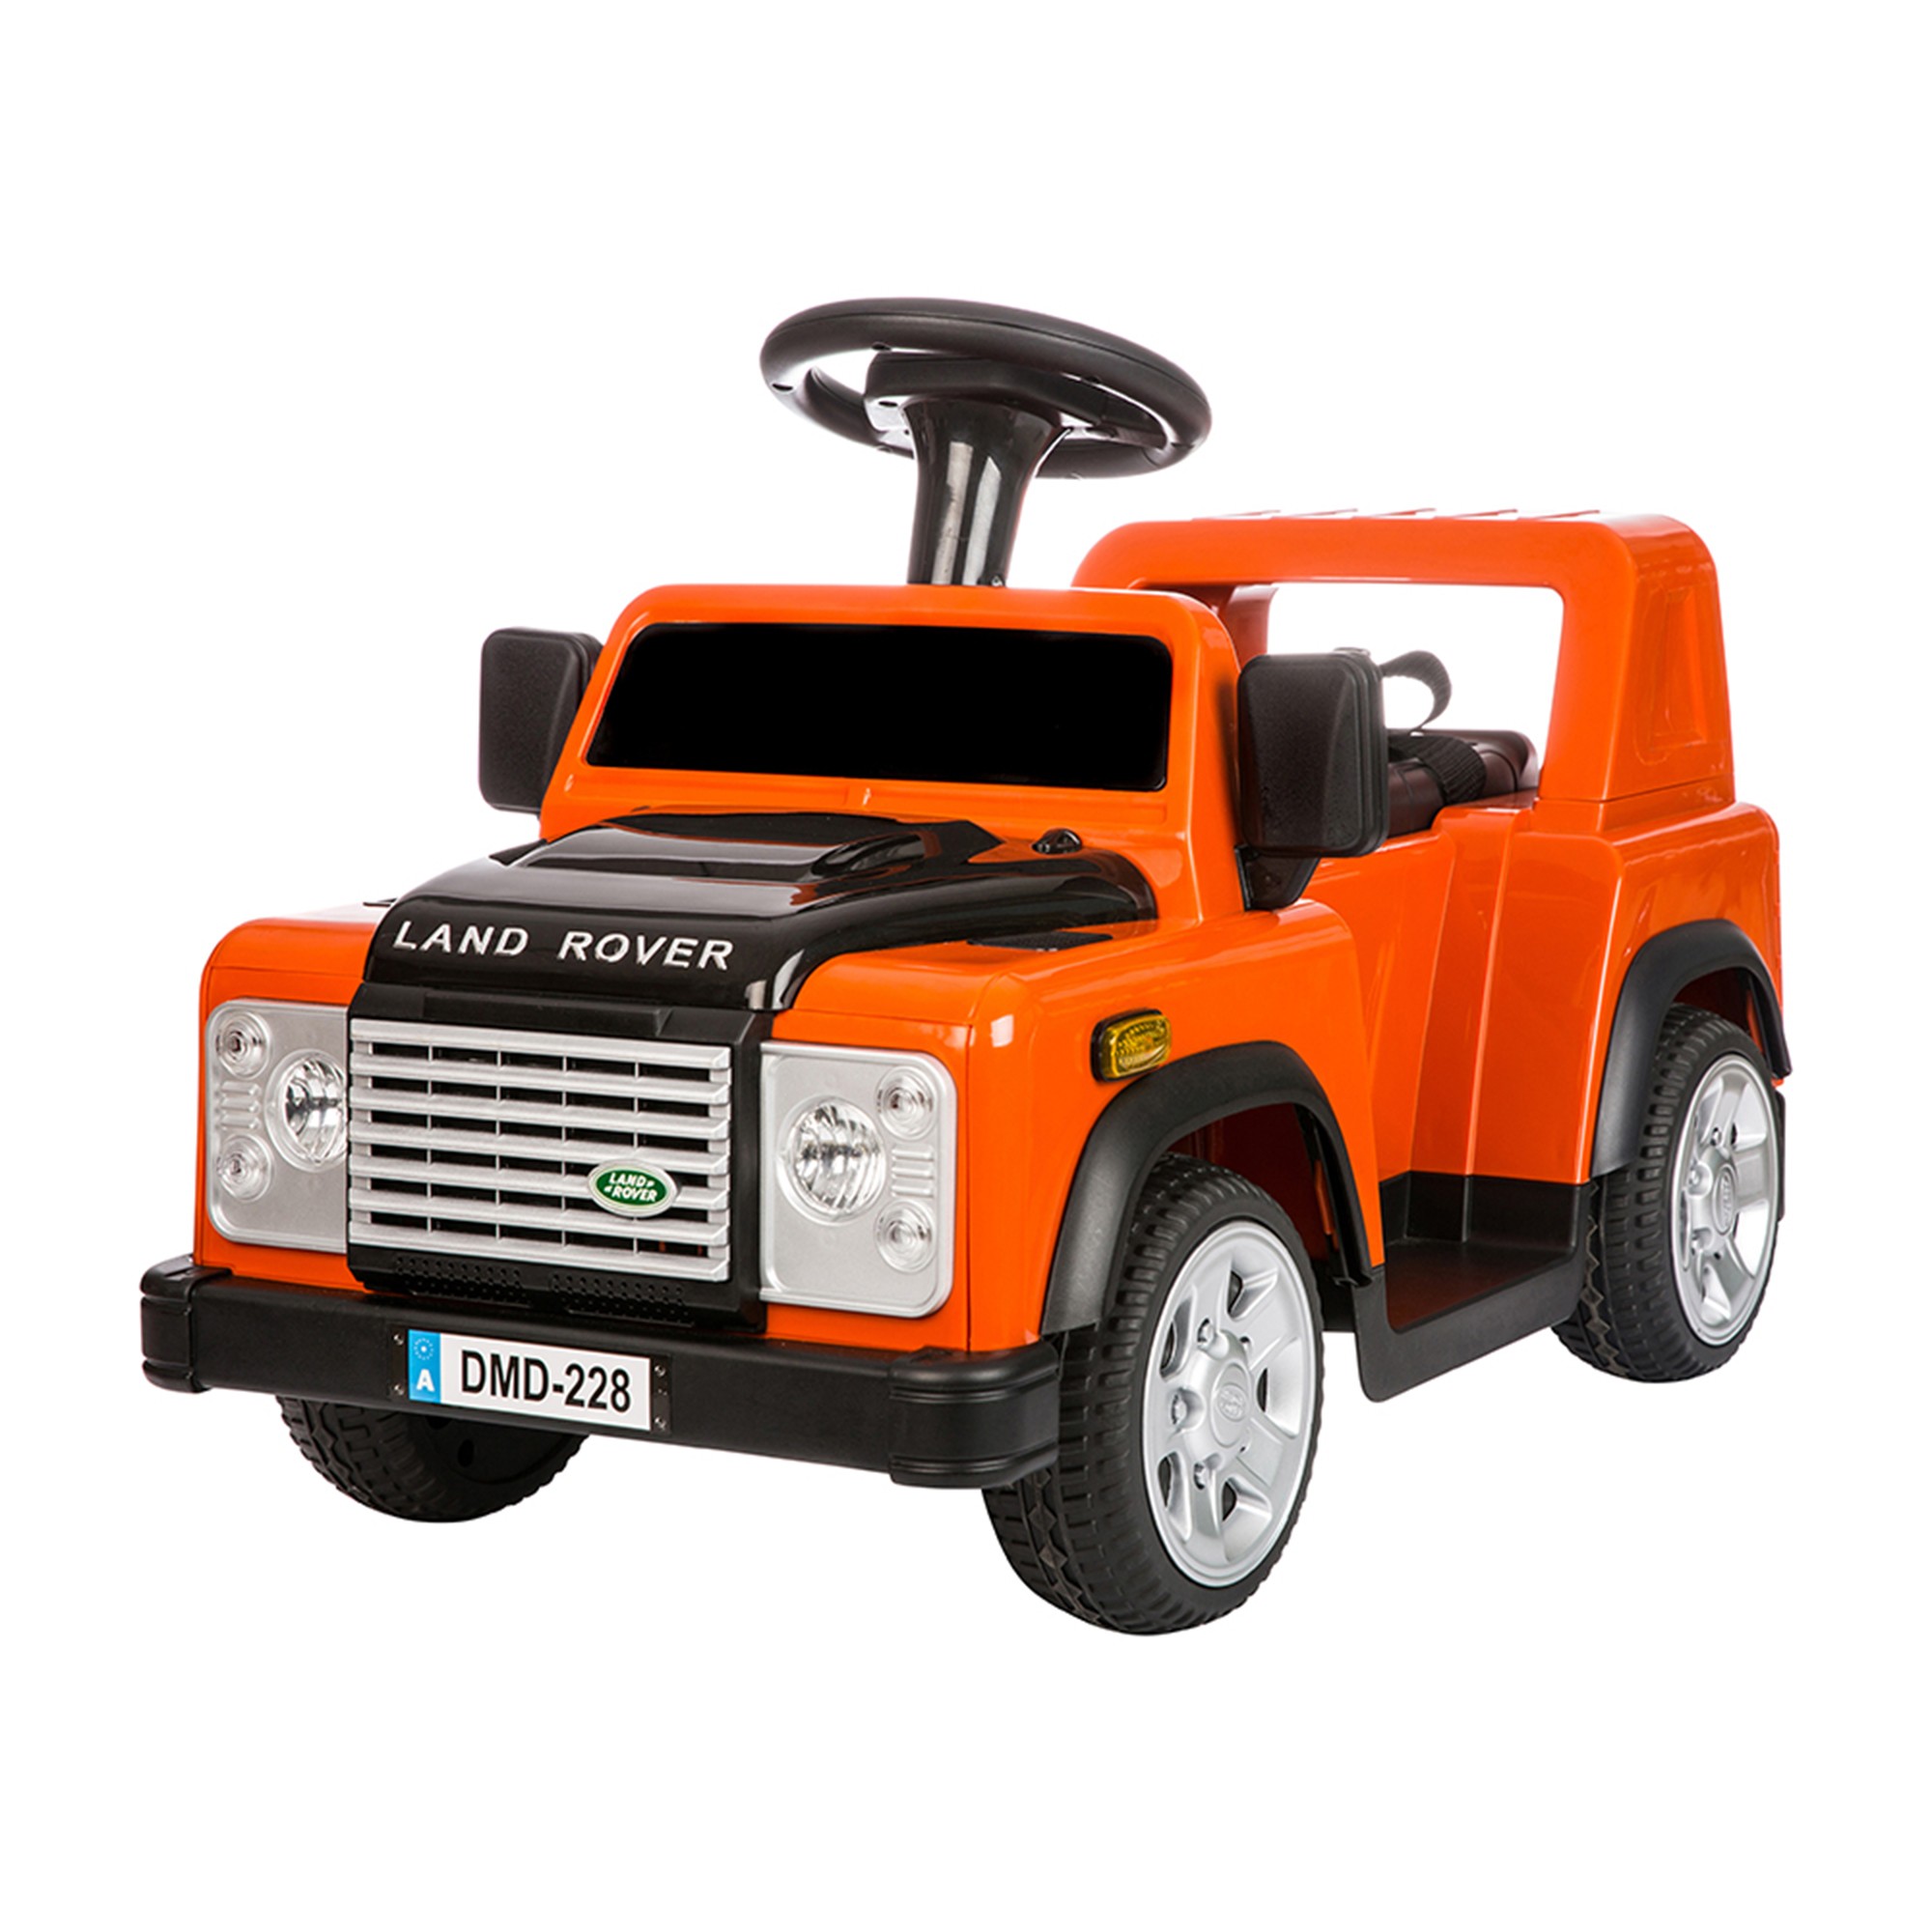 DA1518 Childrens Ride On 6V Land Rover Defender with Remote Controller Orange